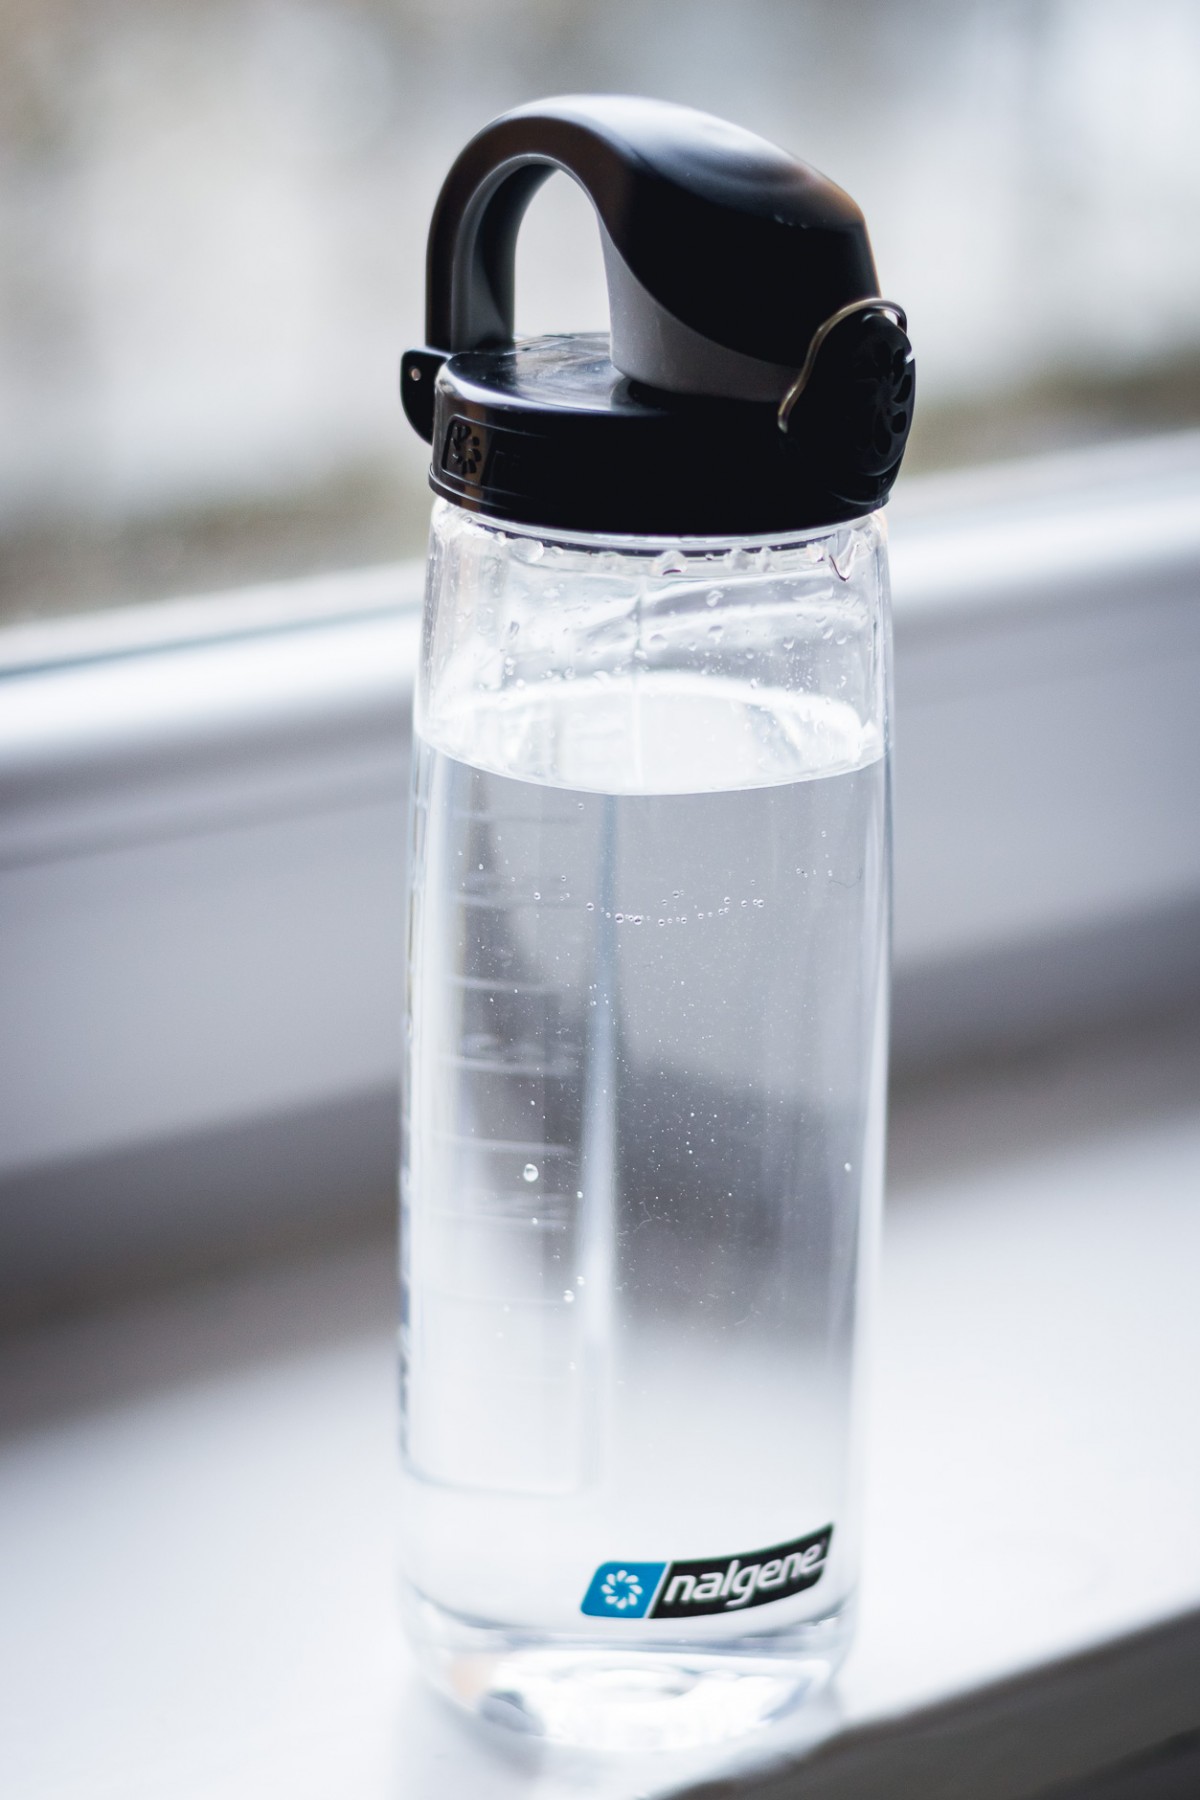 Nalgene water bottle in Germany